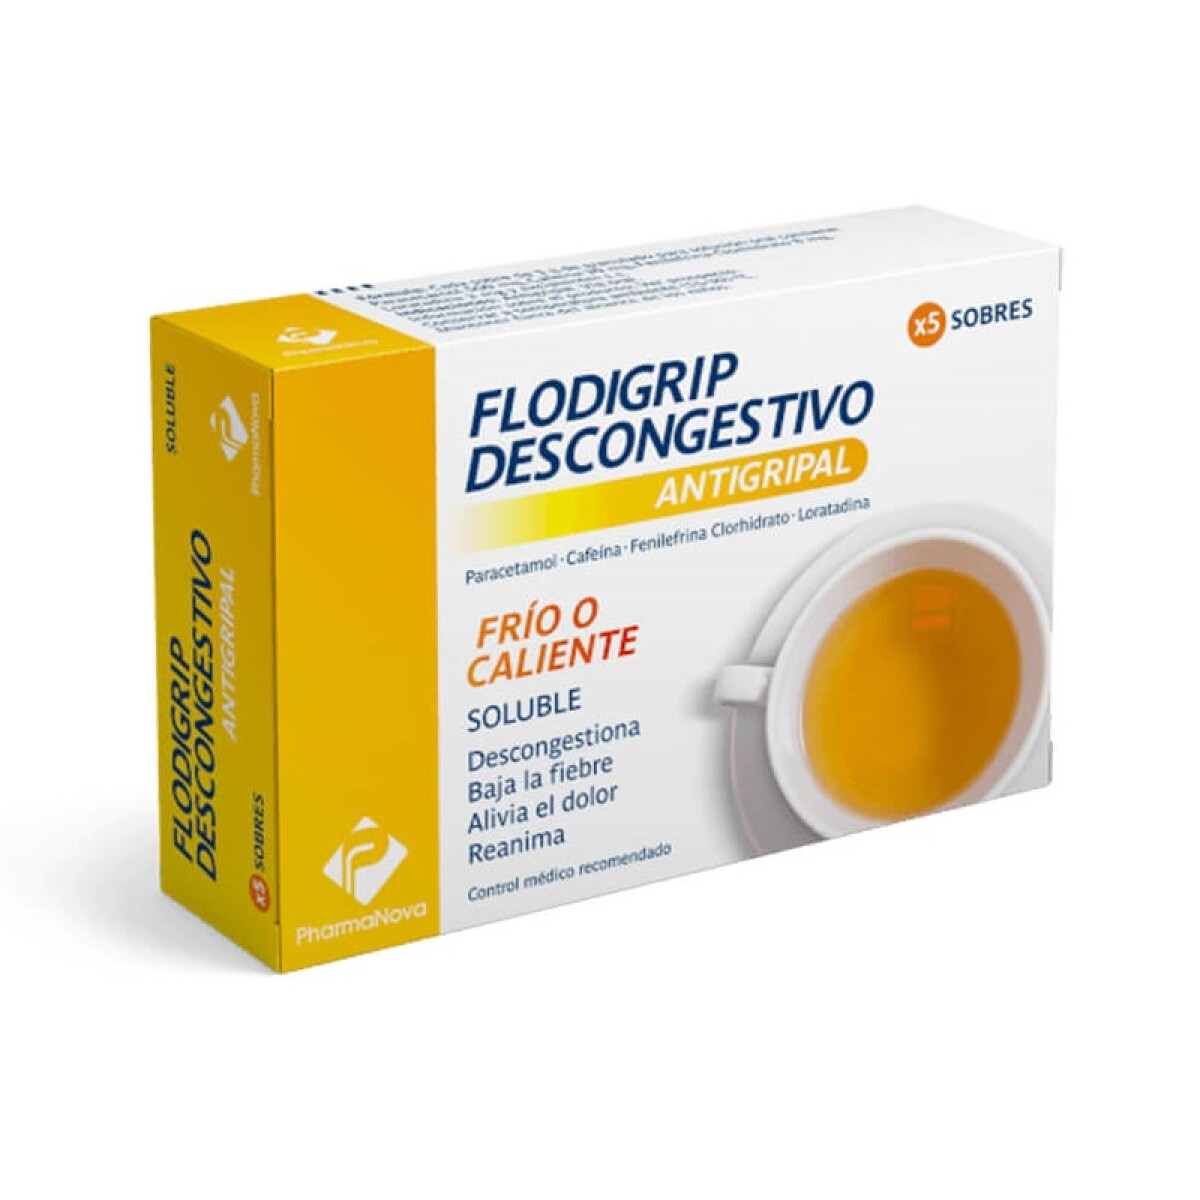 Flodigrip Descongestivo 5 Sobres 